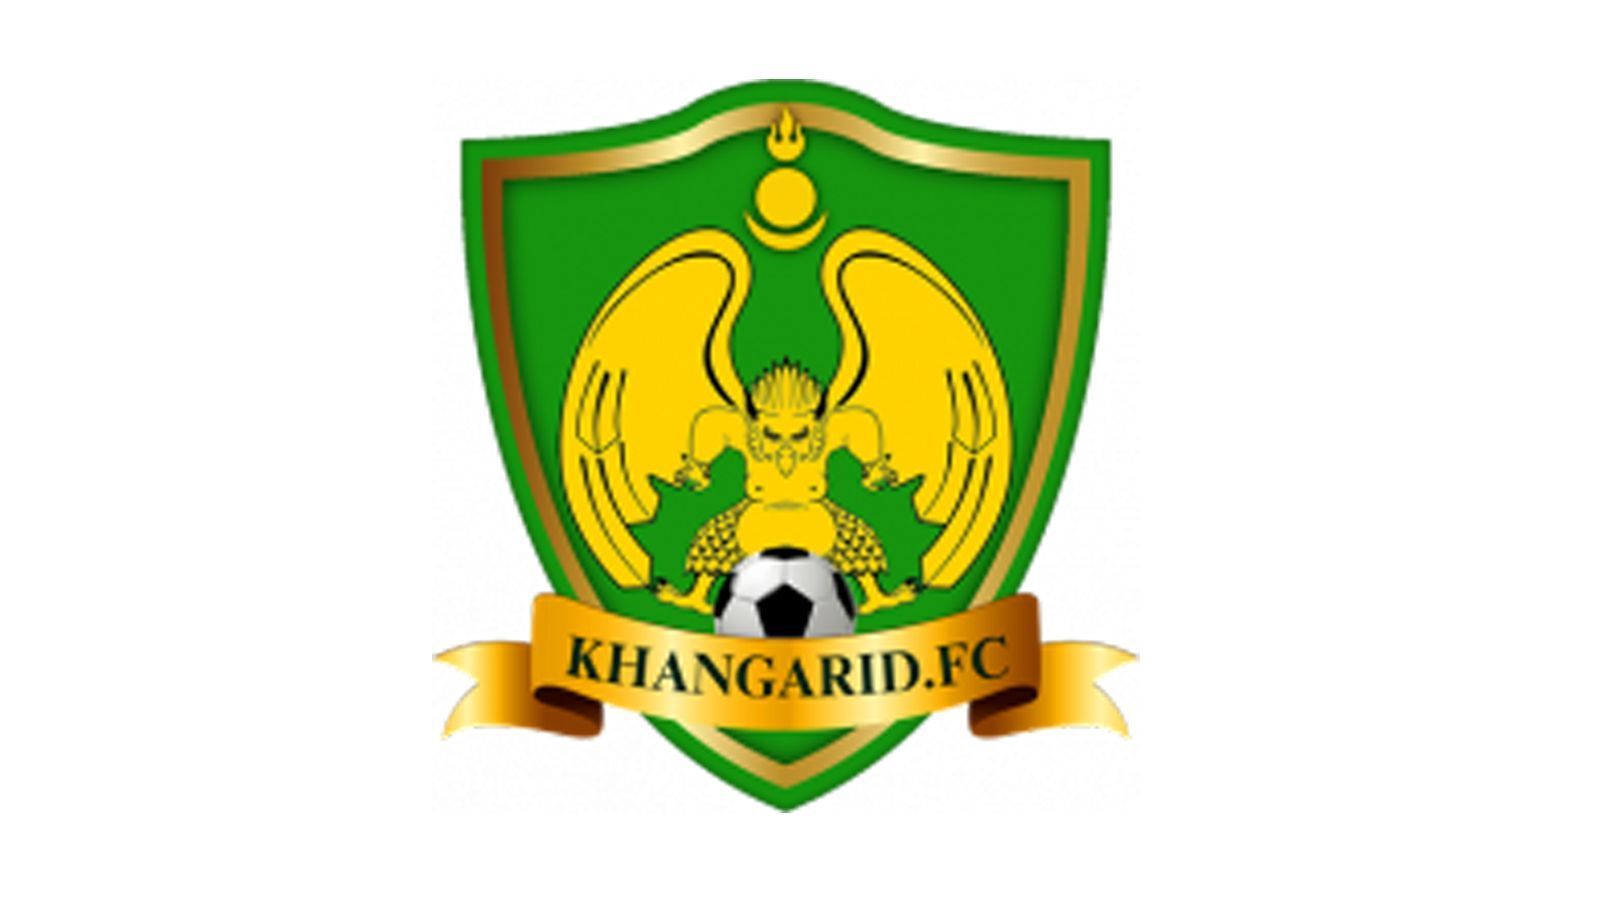 
                <strong>Die hässlichsten Vereinswappen der Welt</strong><br>
                Klub: Khangarid FCLand: Mongolei
              